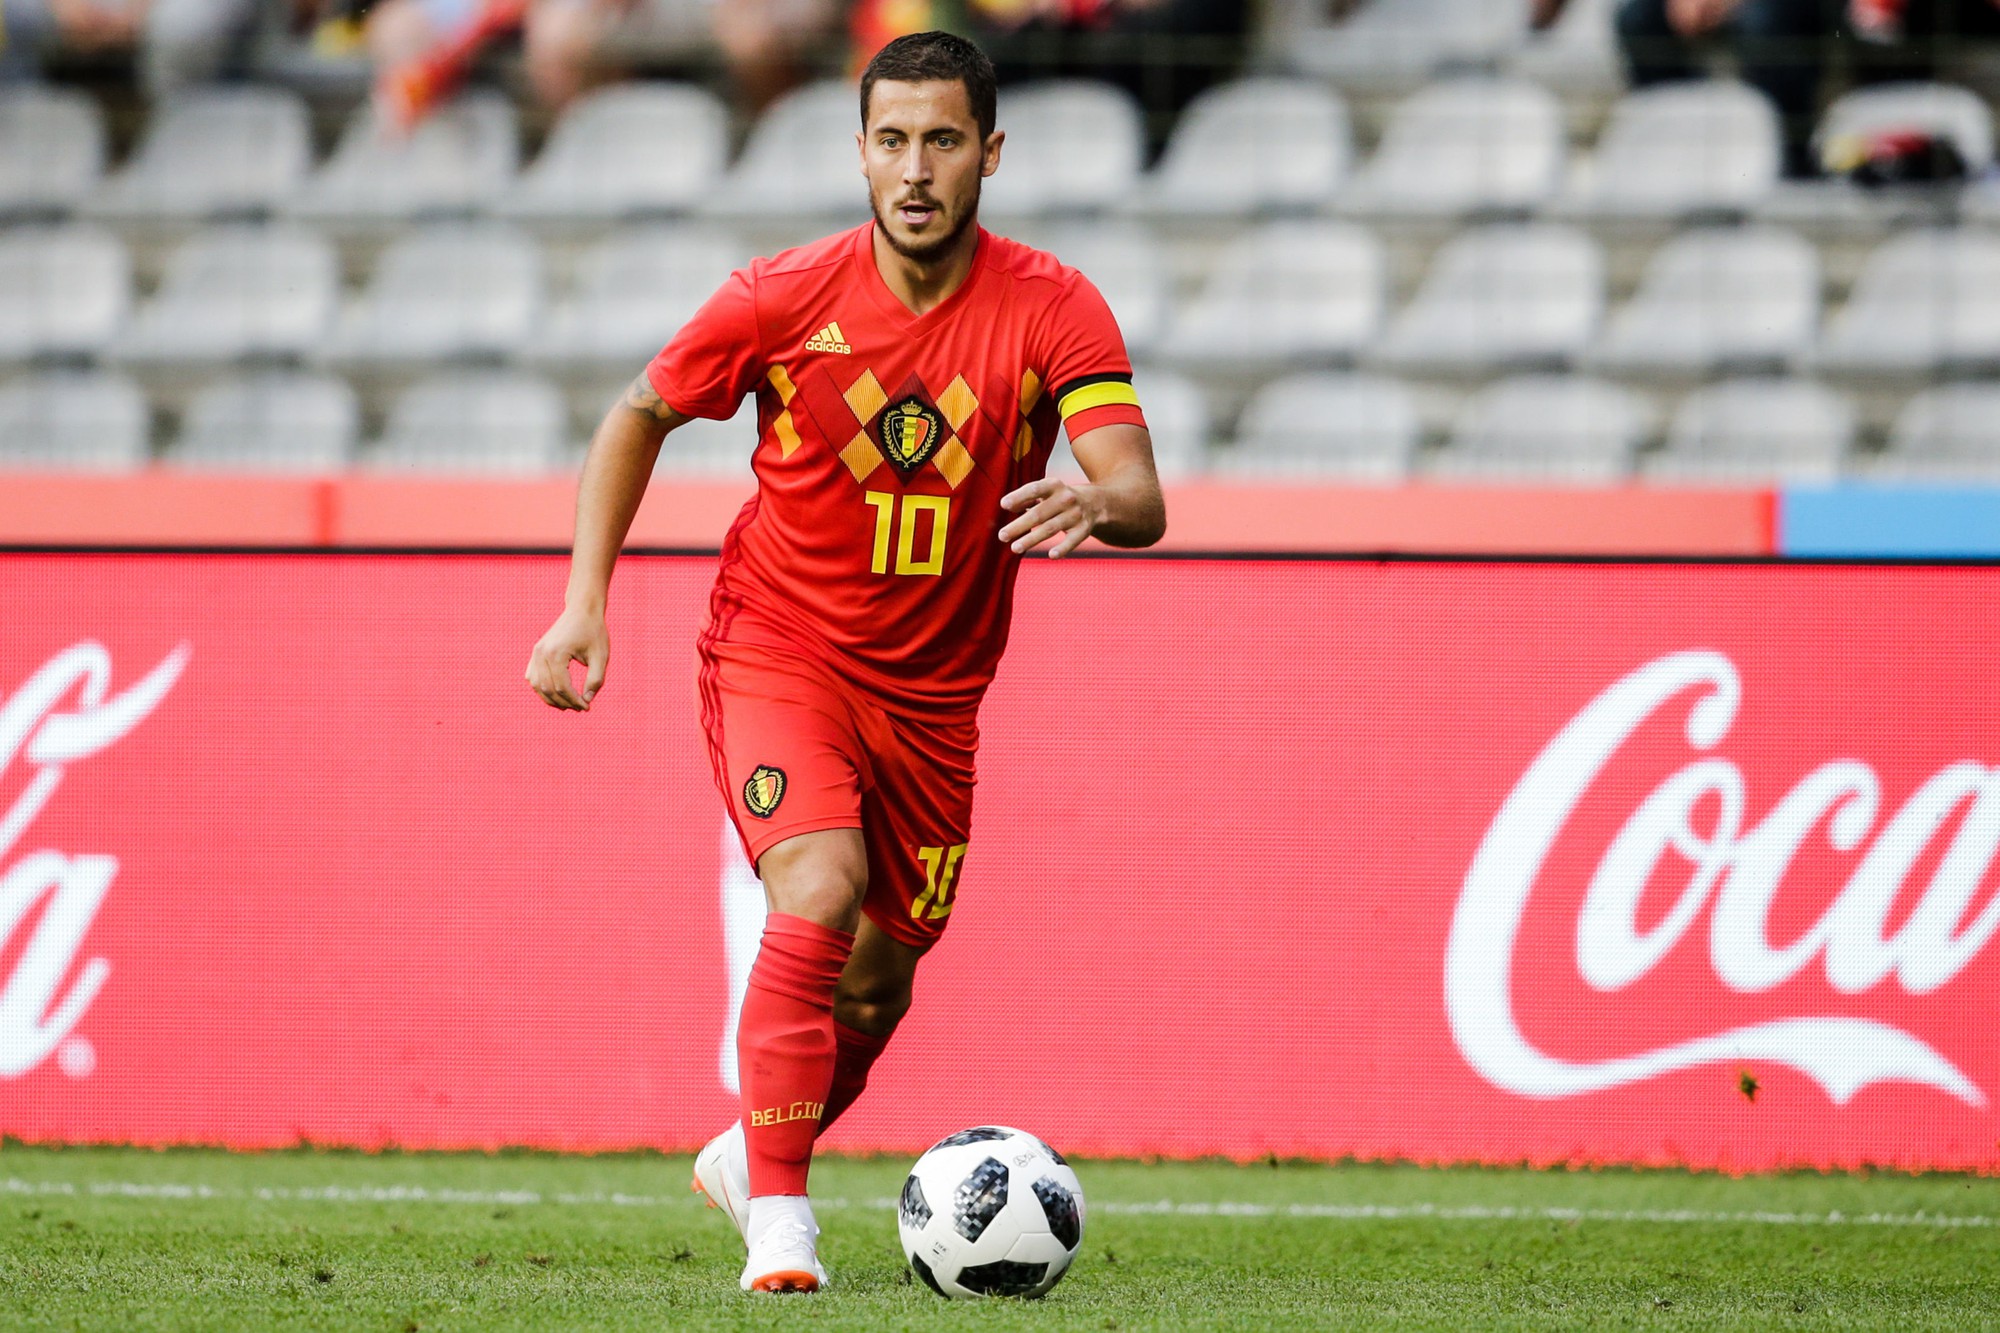 Tam giác quỷ giúp ĐT Bỉ nối dài thành tích bất bại ở vòng bảng World Cup - Ảnh 3.